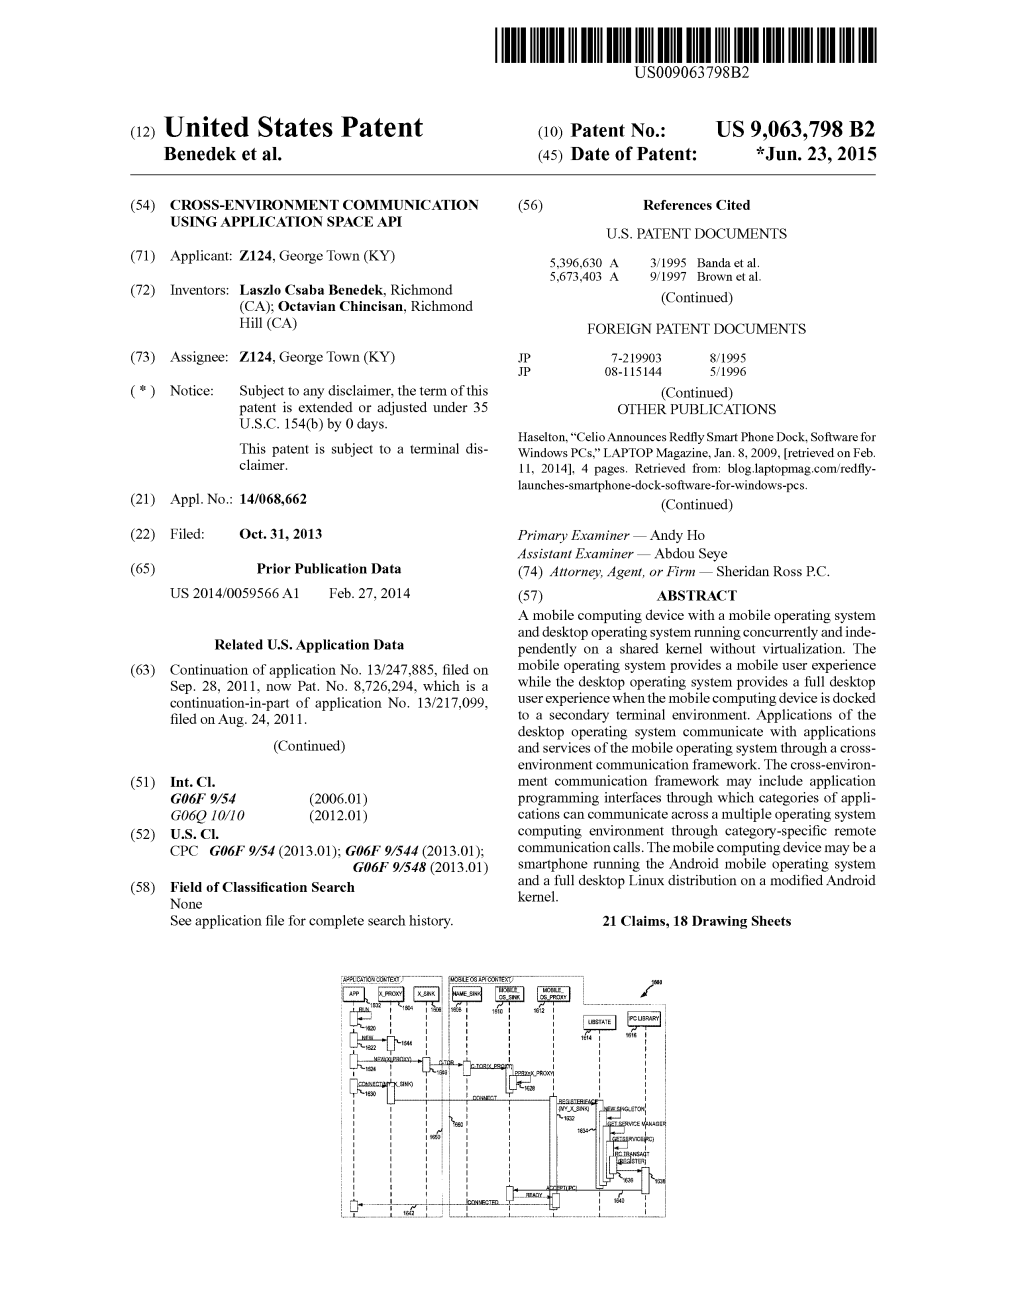 (12) United States Patent (10) Patent No.: US 9,063,798 B2 Benedek Et Al